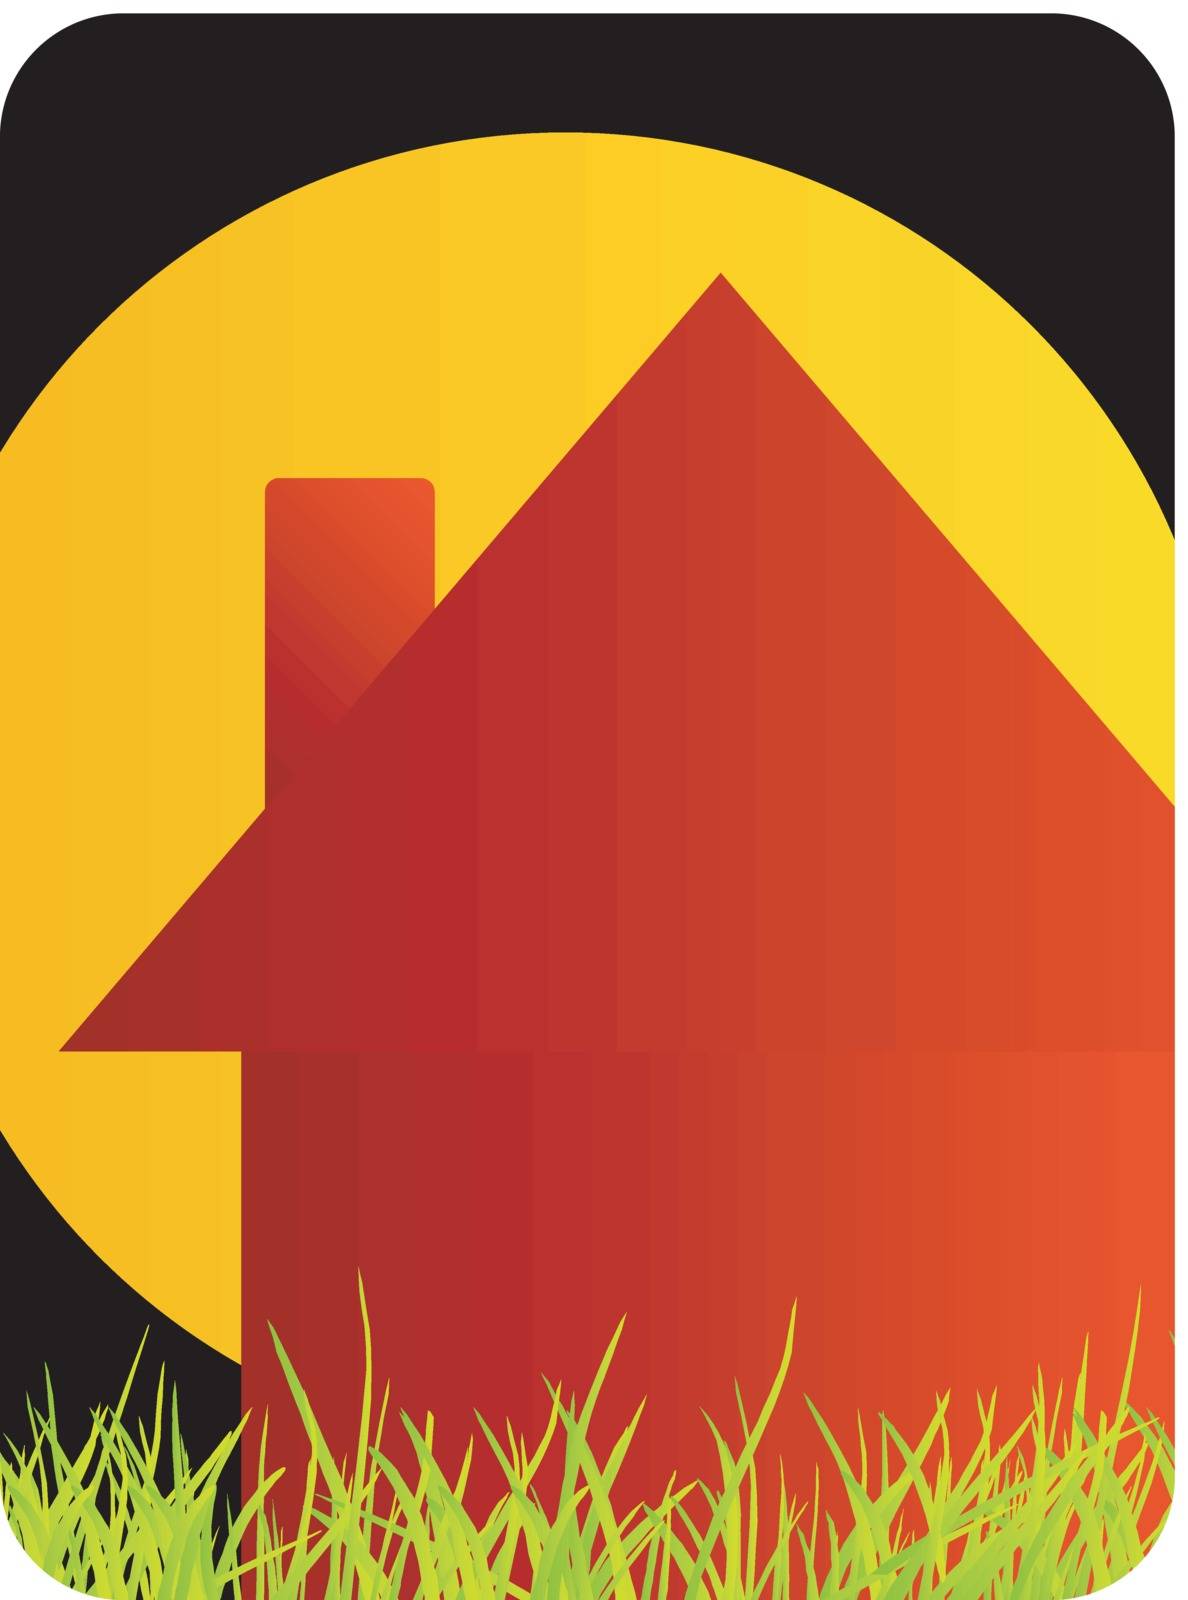 Logo for home renovation by shawlinmohd